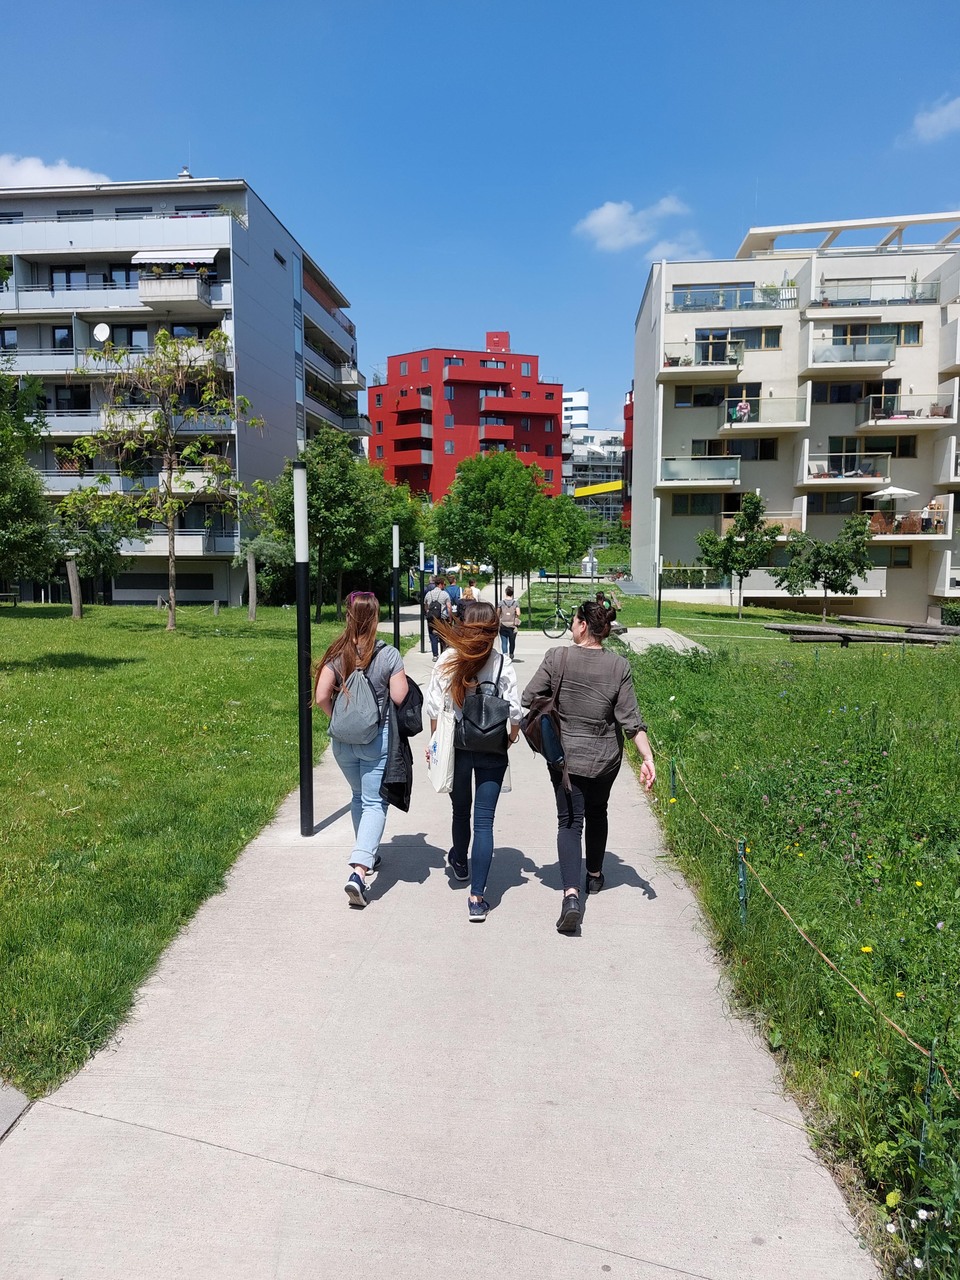 Bécs barnamezős fejlesztése a Főpályaudvar építését követően felszabaduló területen változatos, emberi léptékű városnegyedet hozott létre, parkkal, különféle lakóépülettípusokkal, városias központtal. Fotó: Erő Zoltán
